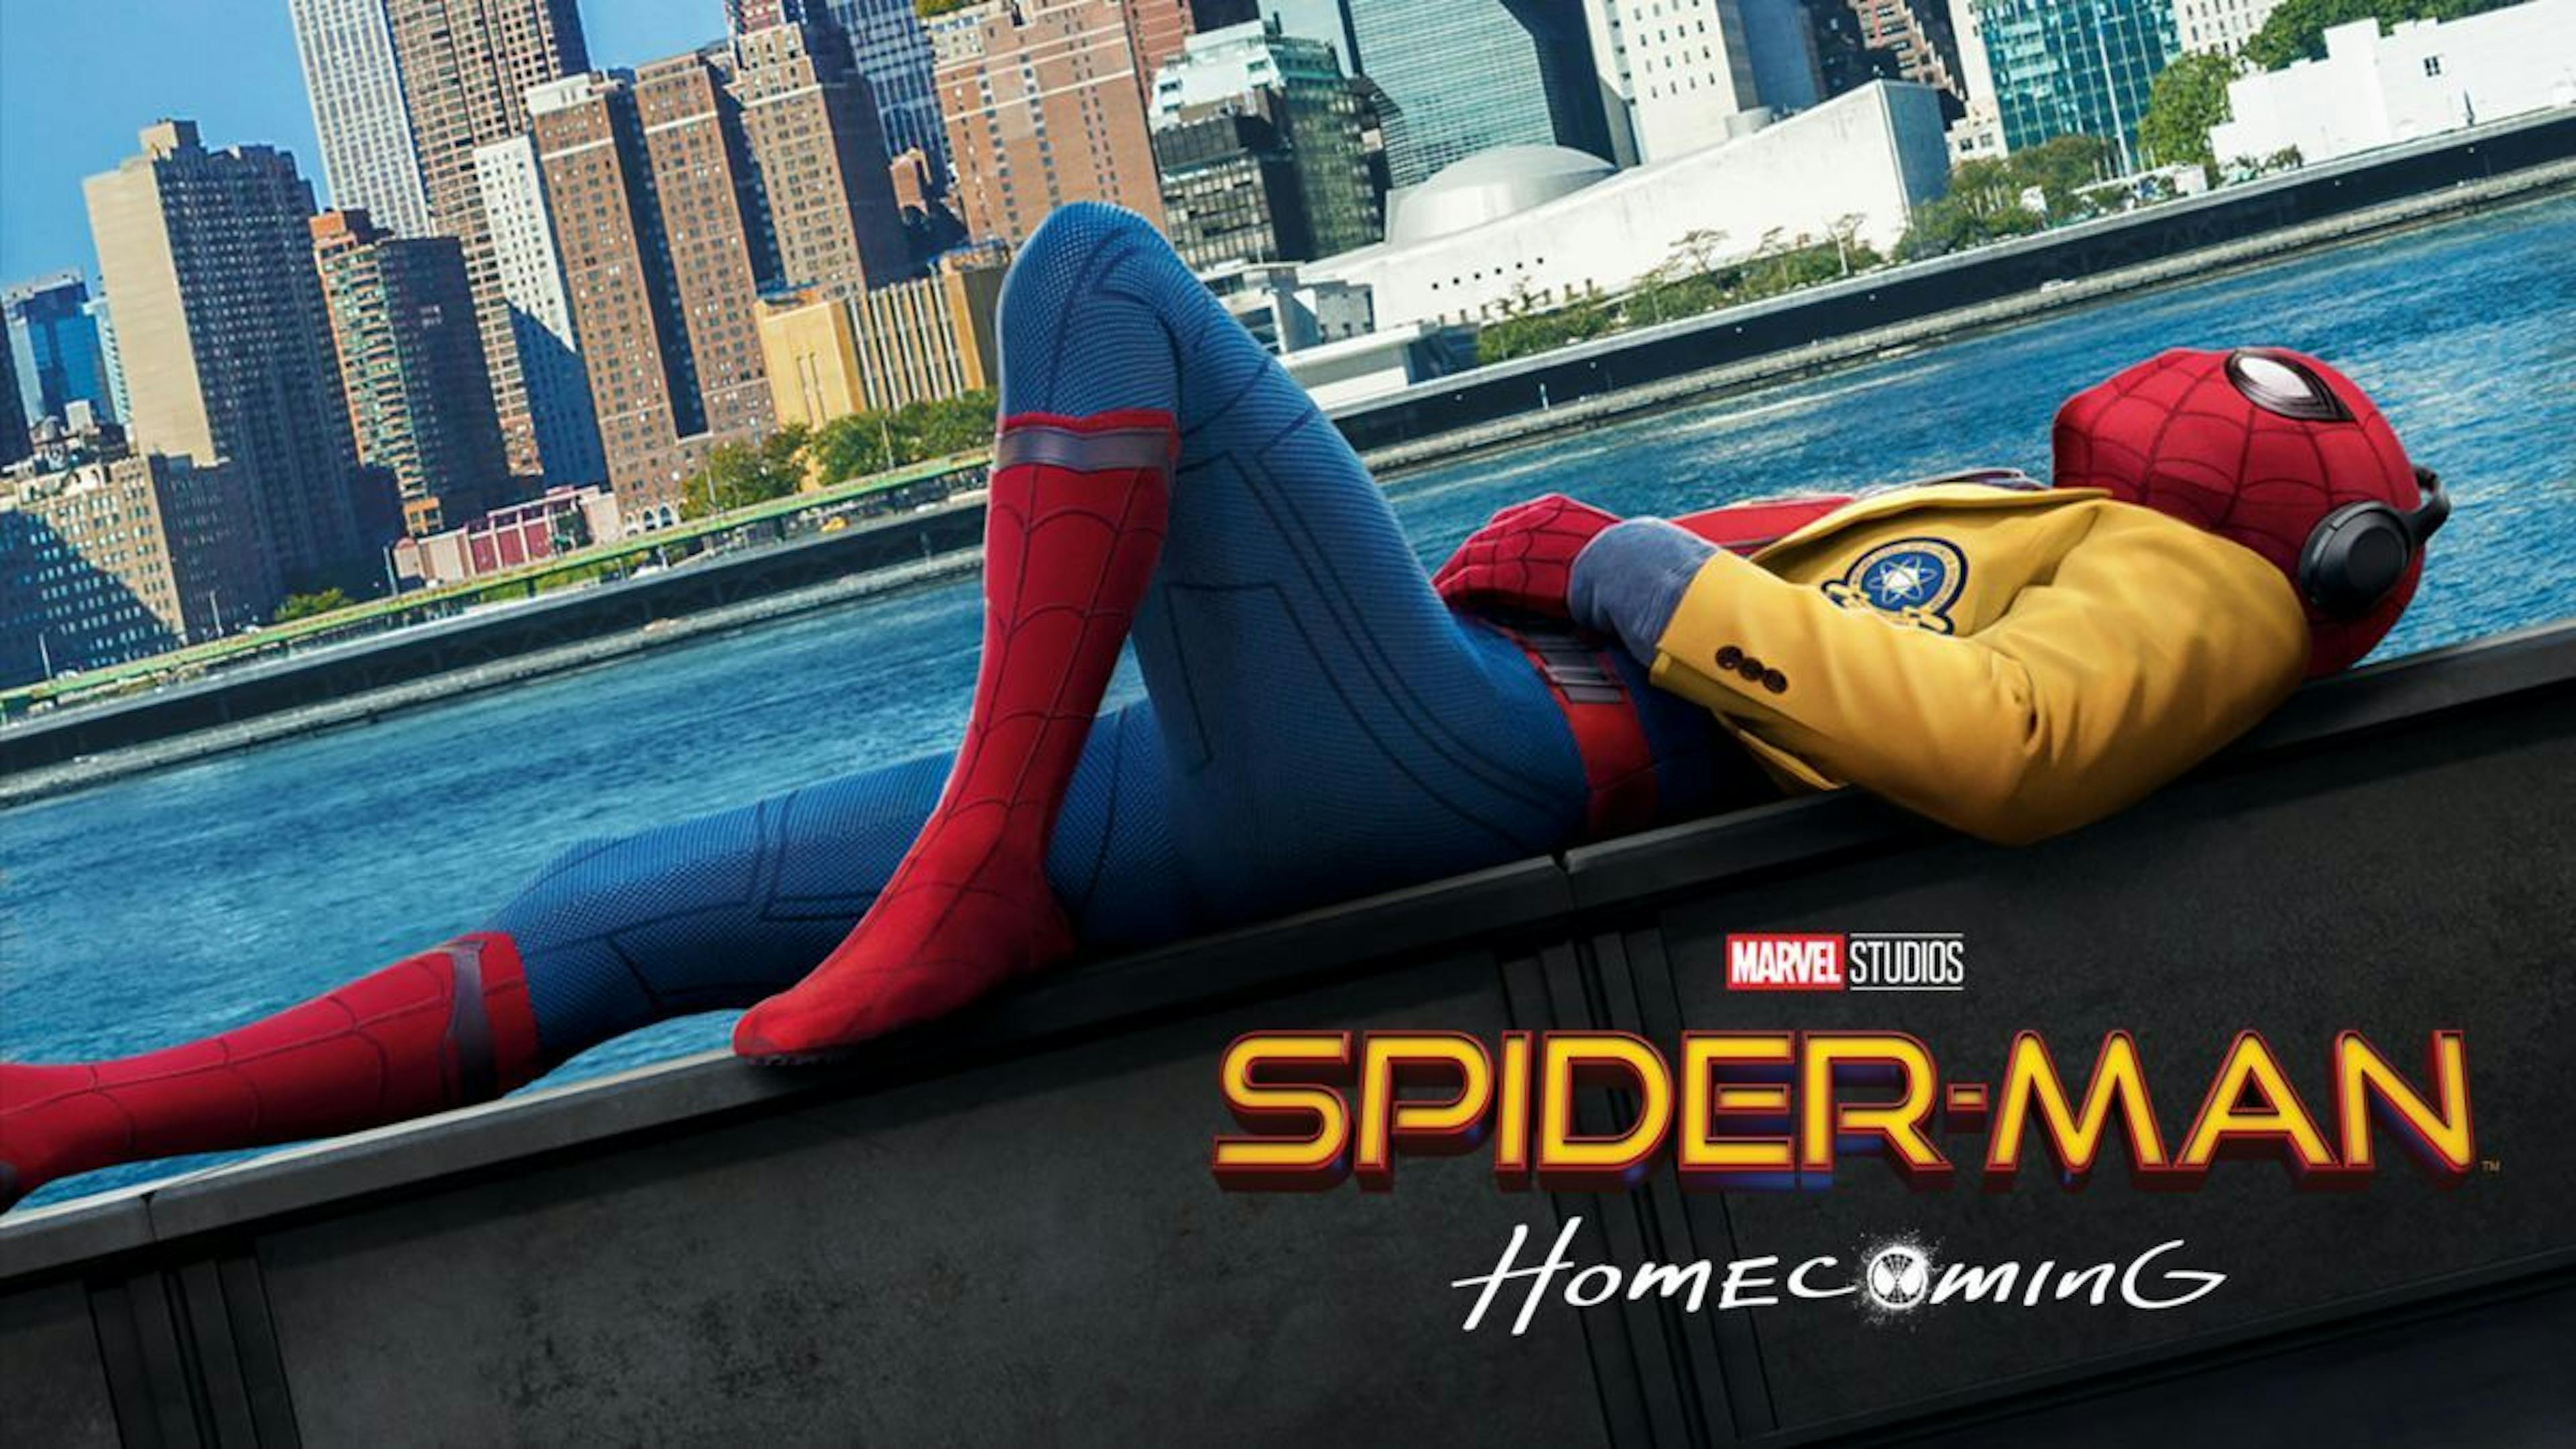 featured image - Die Tom Holland Spider-Man-Filme in der Reihenfolge ihres Erscheinungsdatums